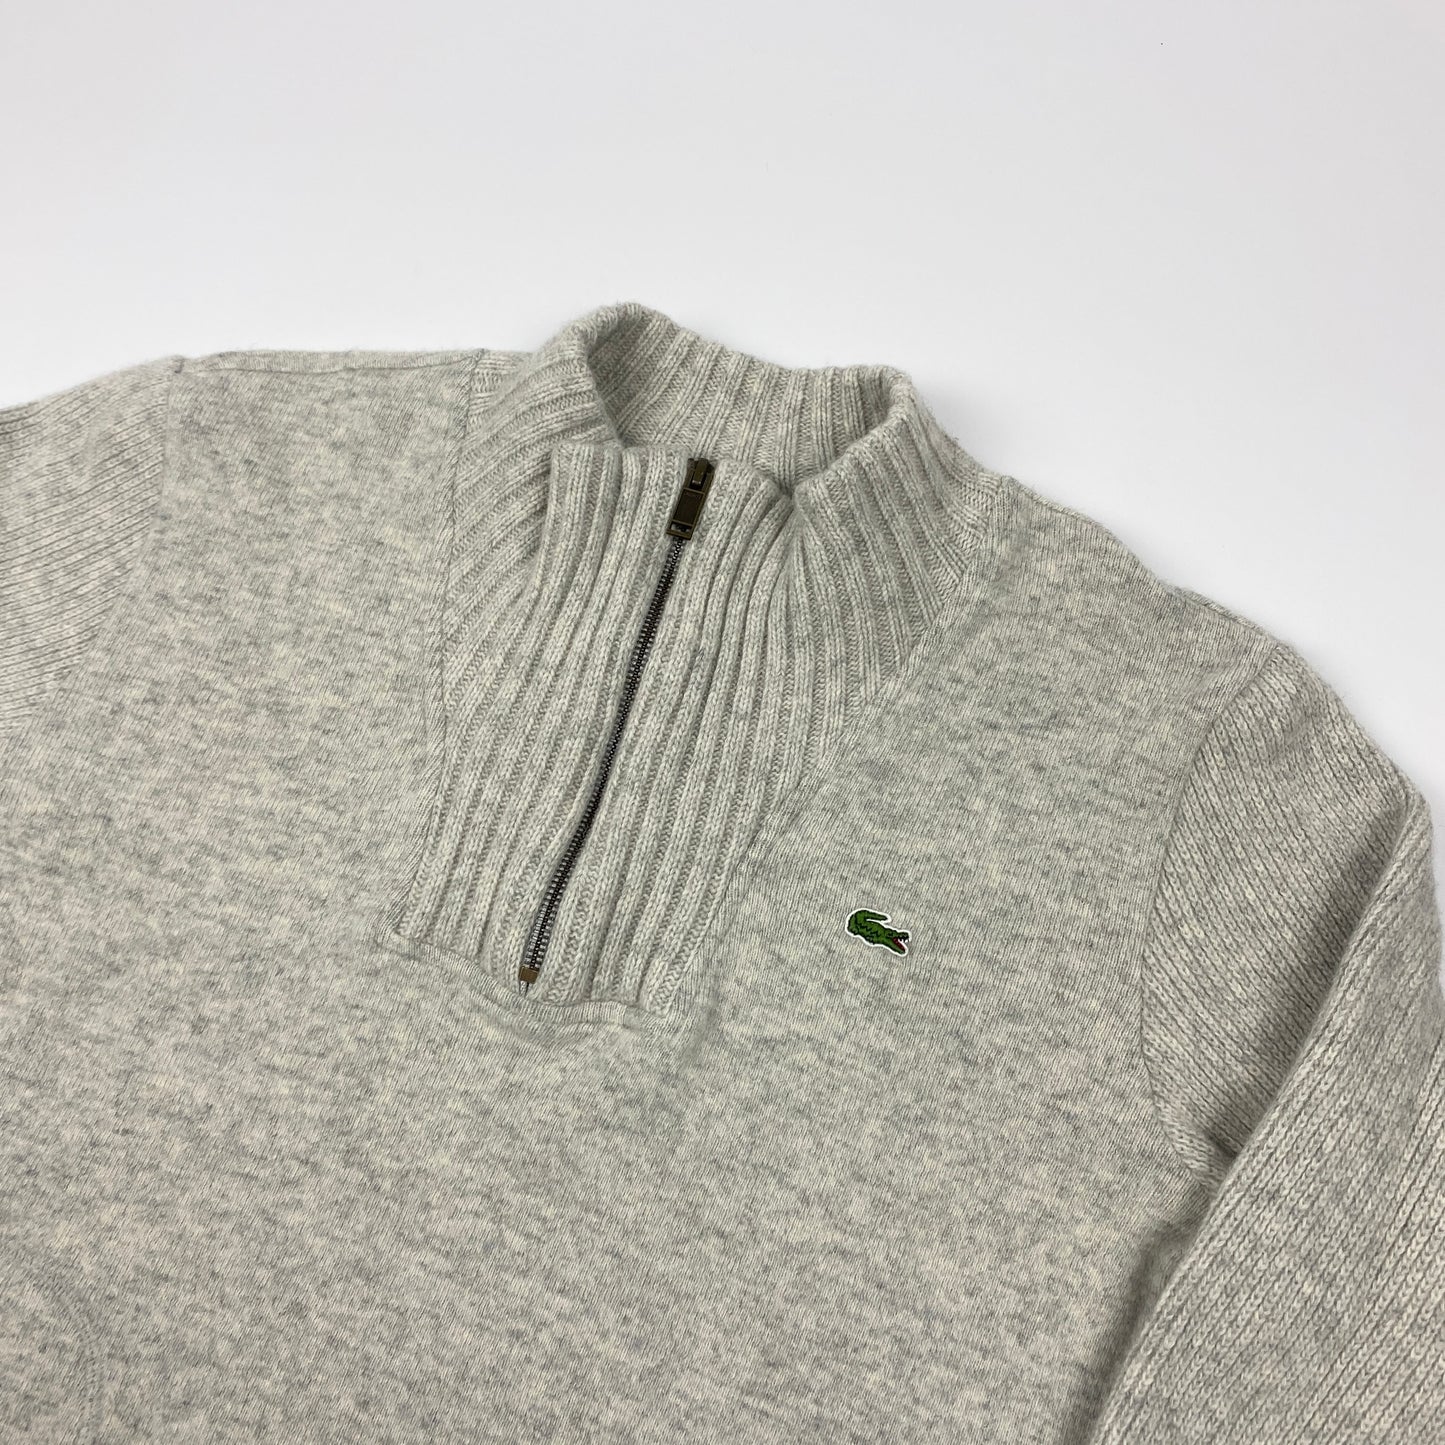 LACOSTE Half-Zip Sweater